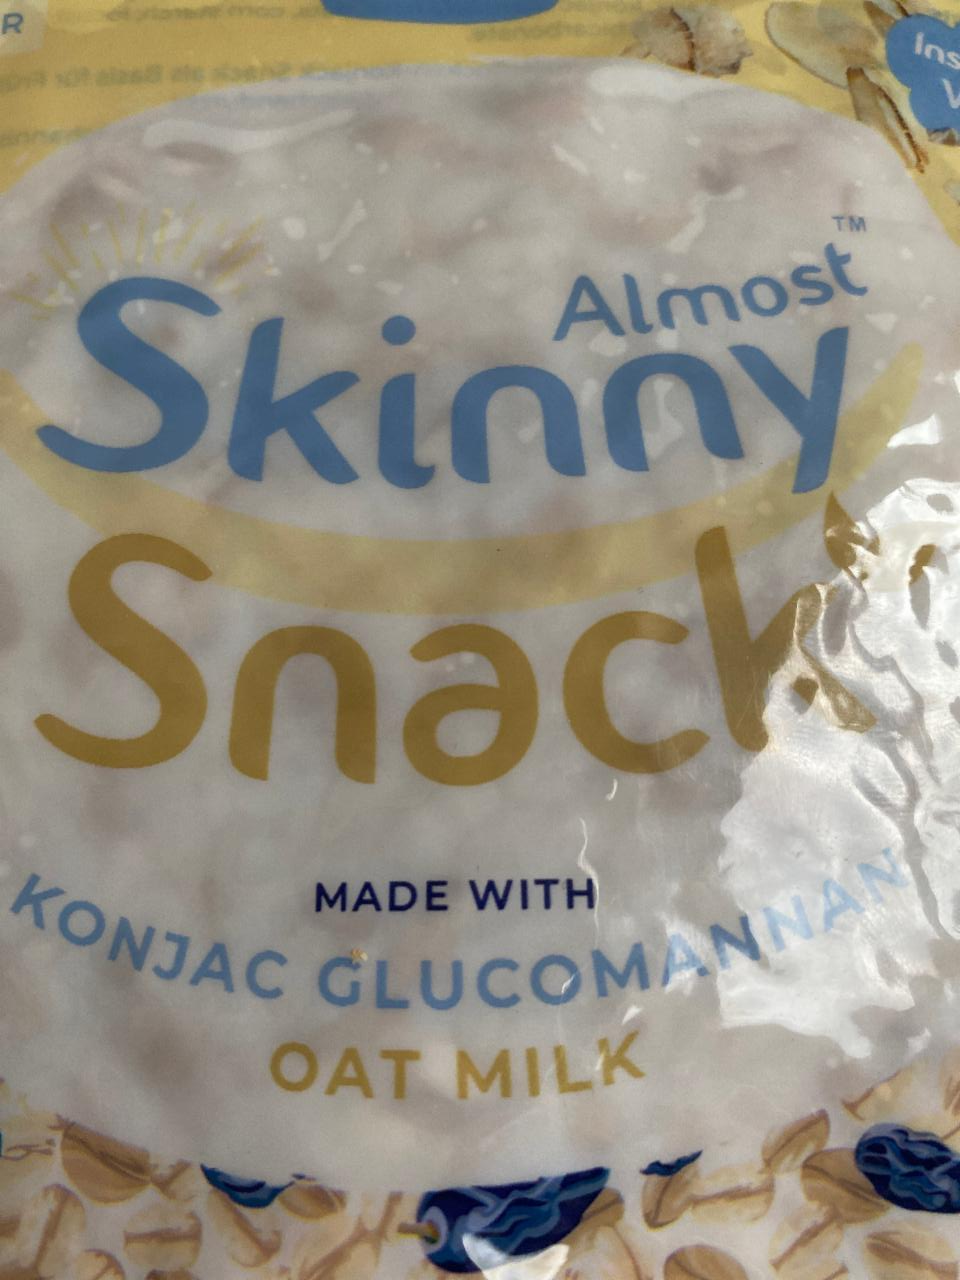 Fotografie - Skinny snack Almost